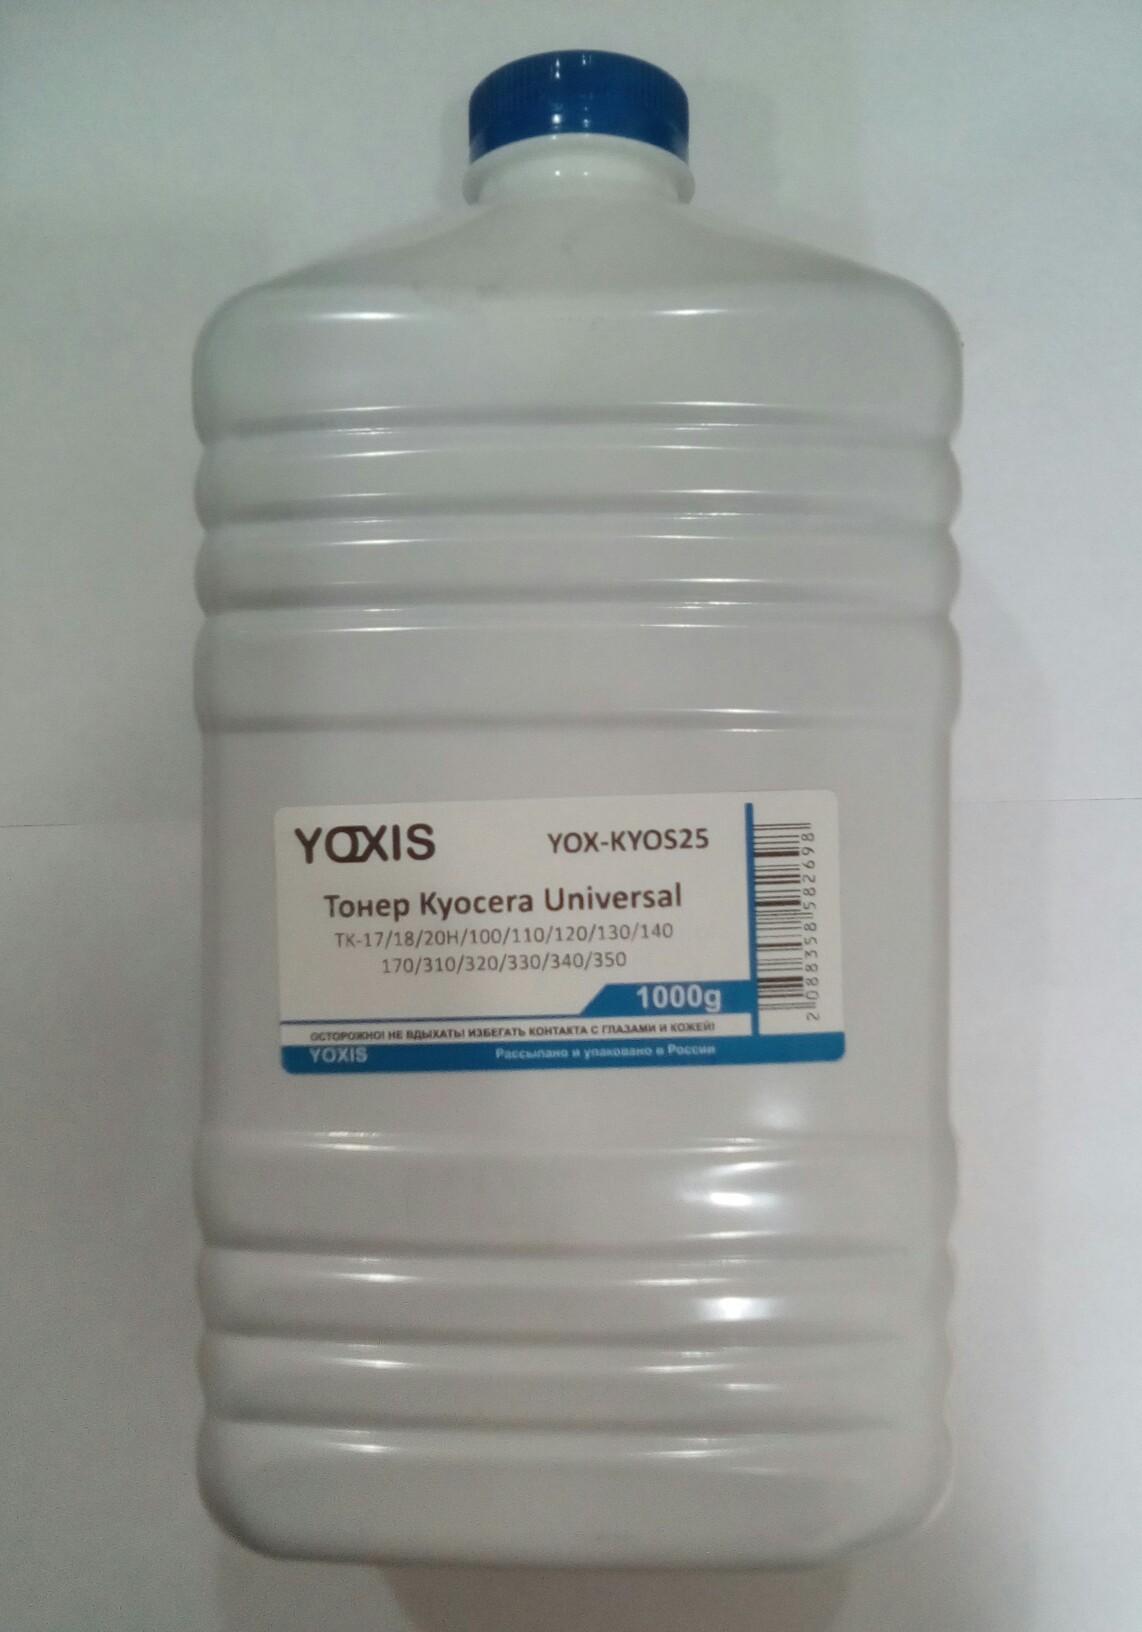   YOXIS  Kyocera Universal 1 .   